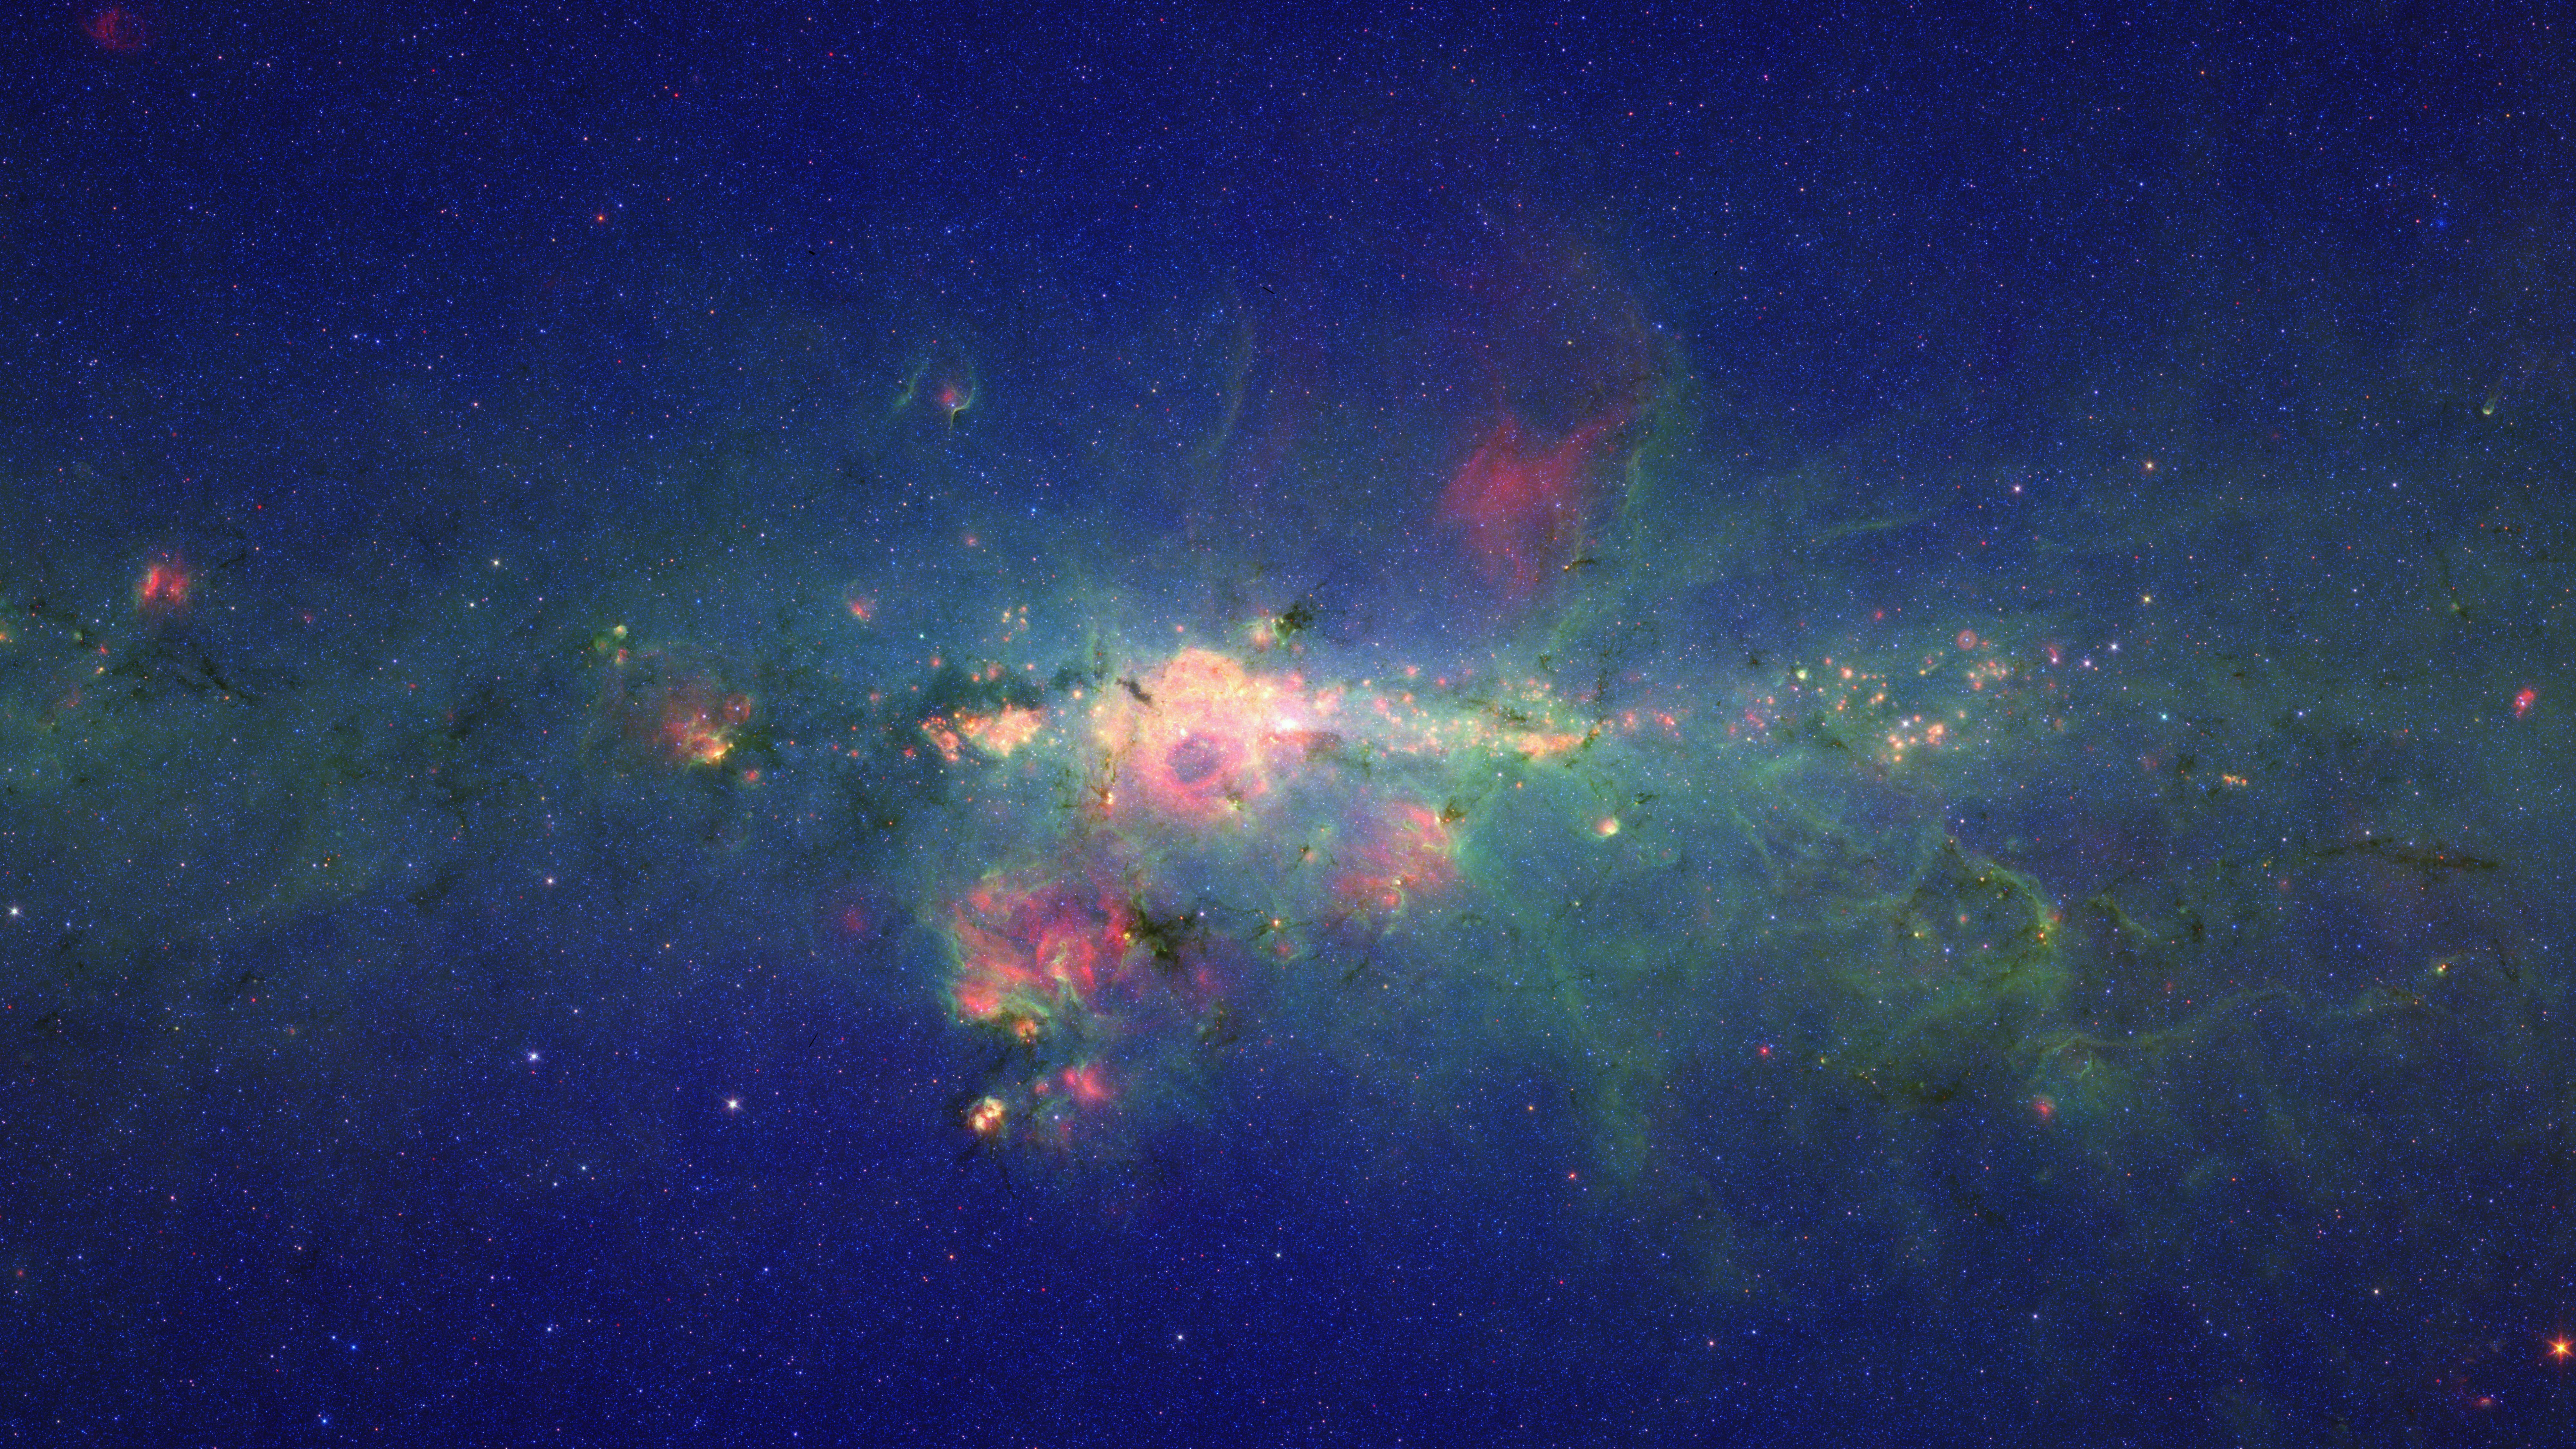 银河系, 斯皮策太空望远镜, 明星, 气氛, 天文学对象 壁纸 7680x4320 允许